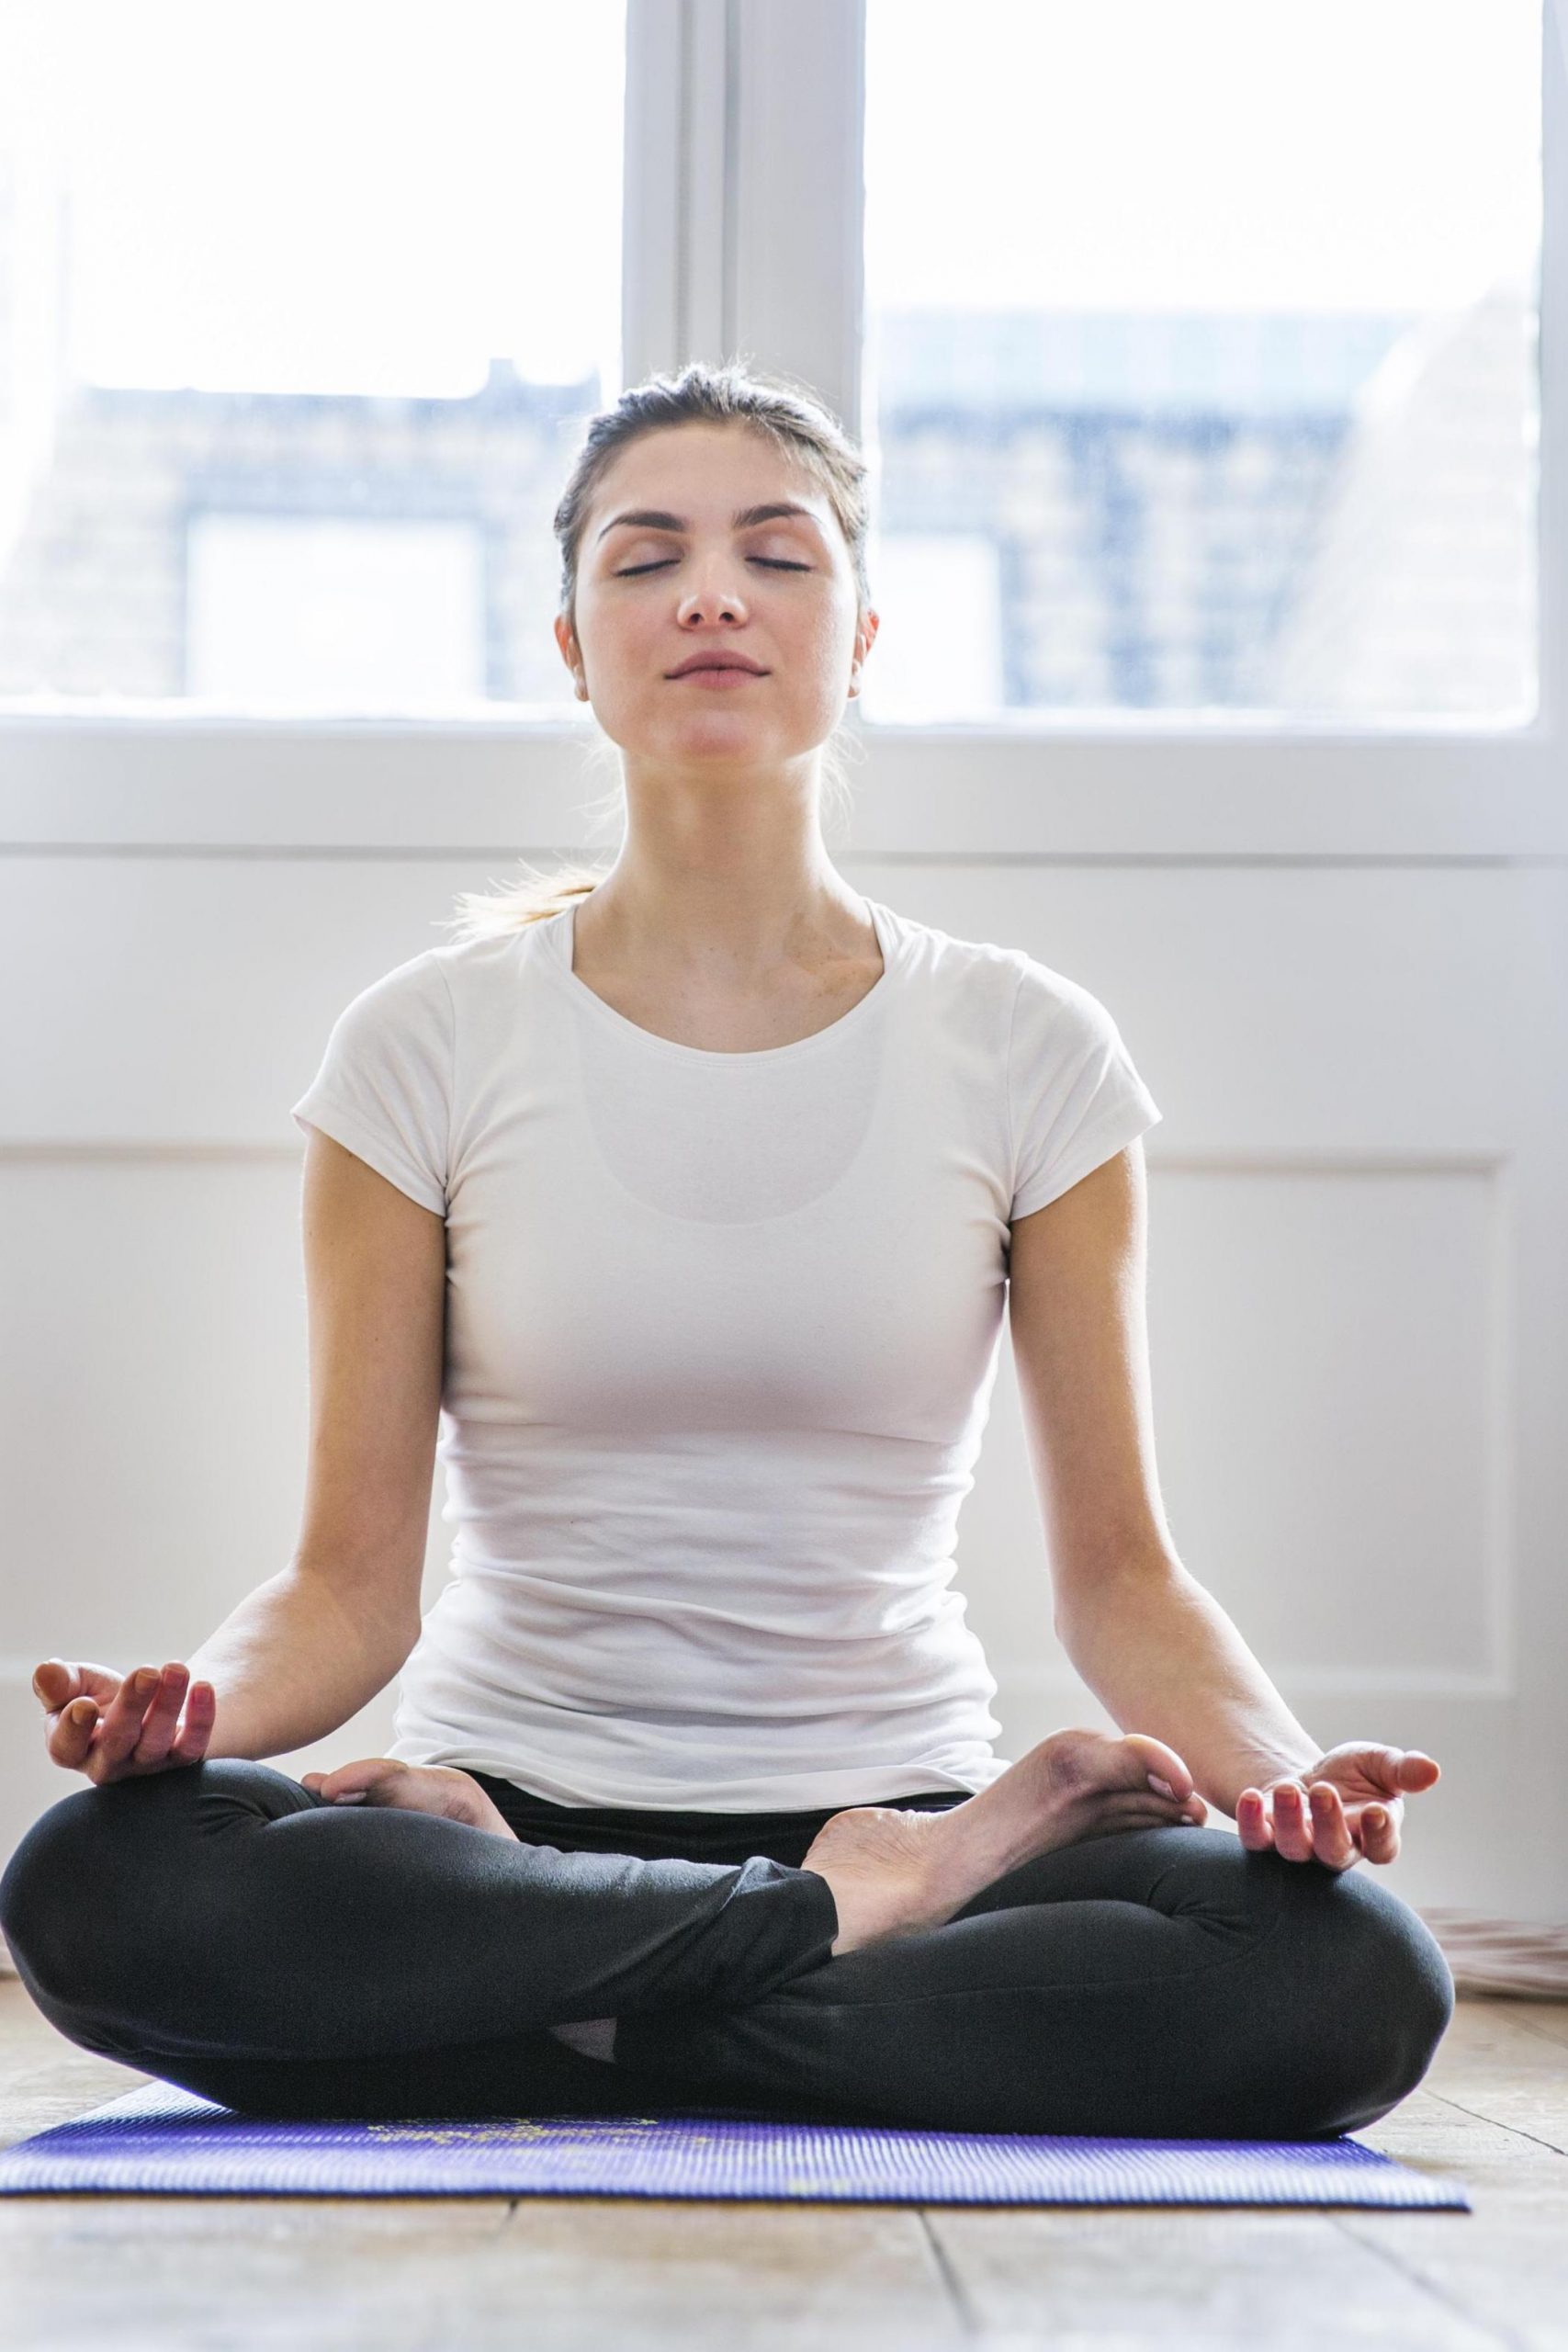 A women doing meditation